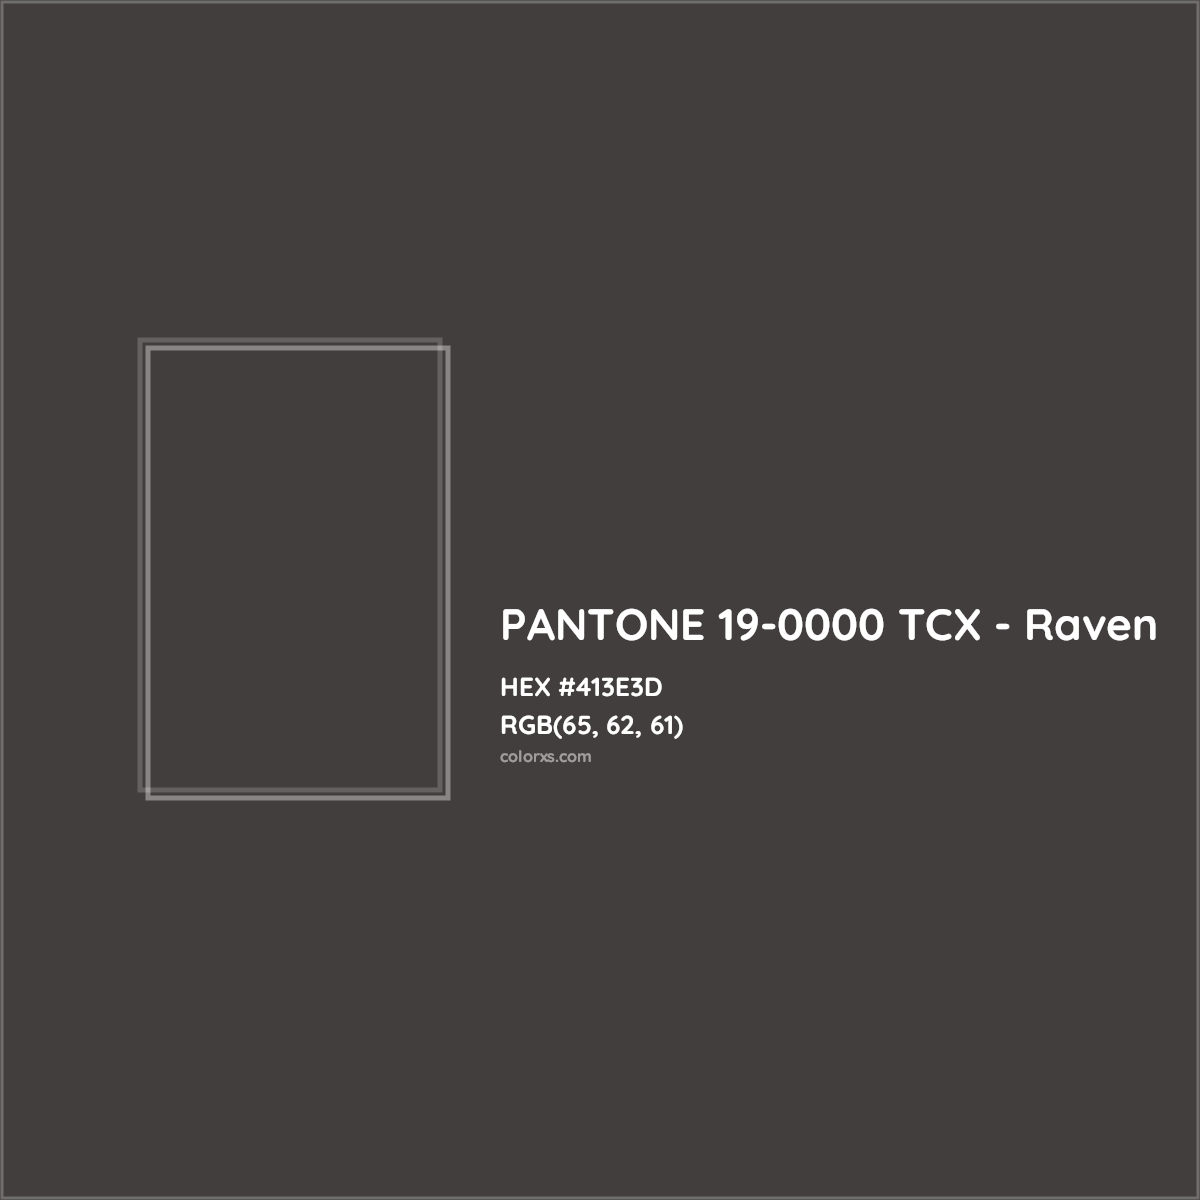 HEX #413E3D PANTONE 19-0000 TCX - Raven CMS Pantone TCX - Color Code